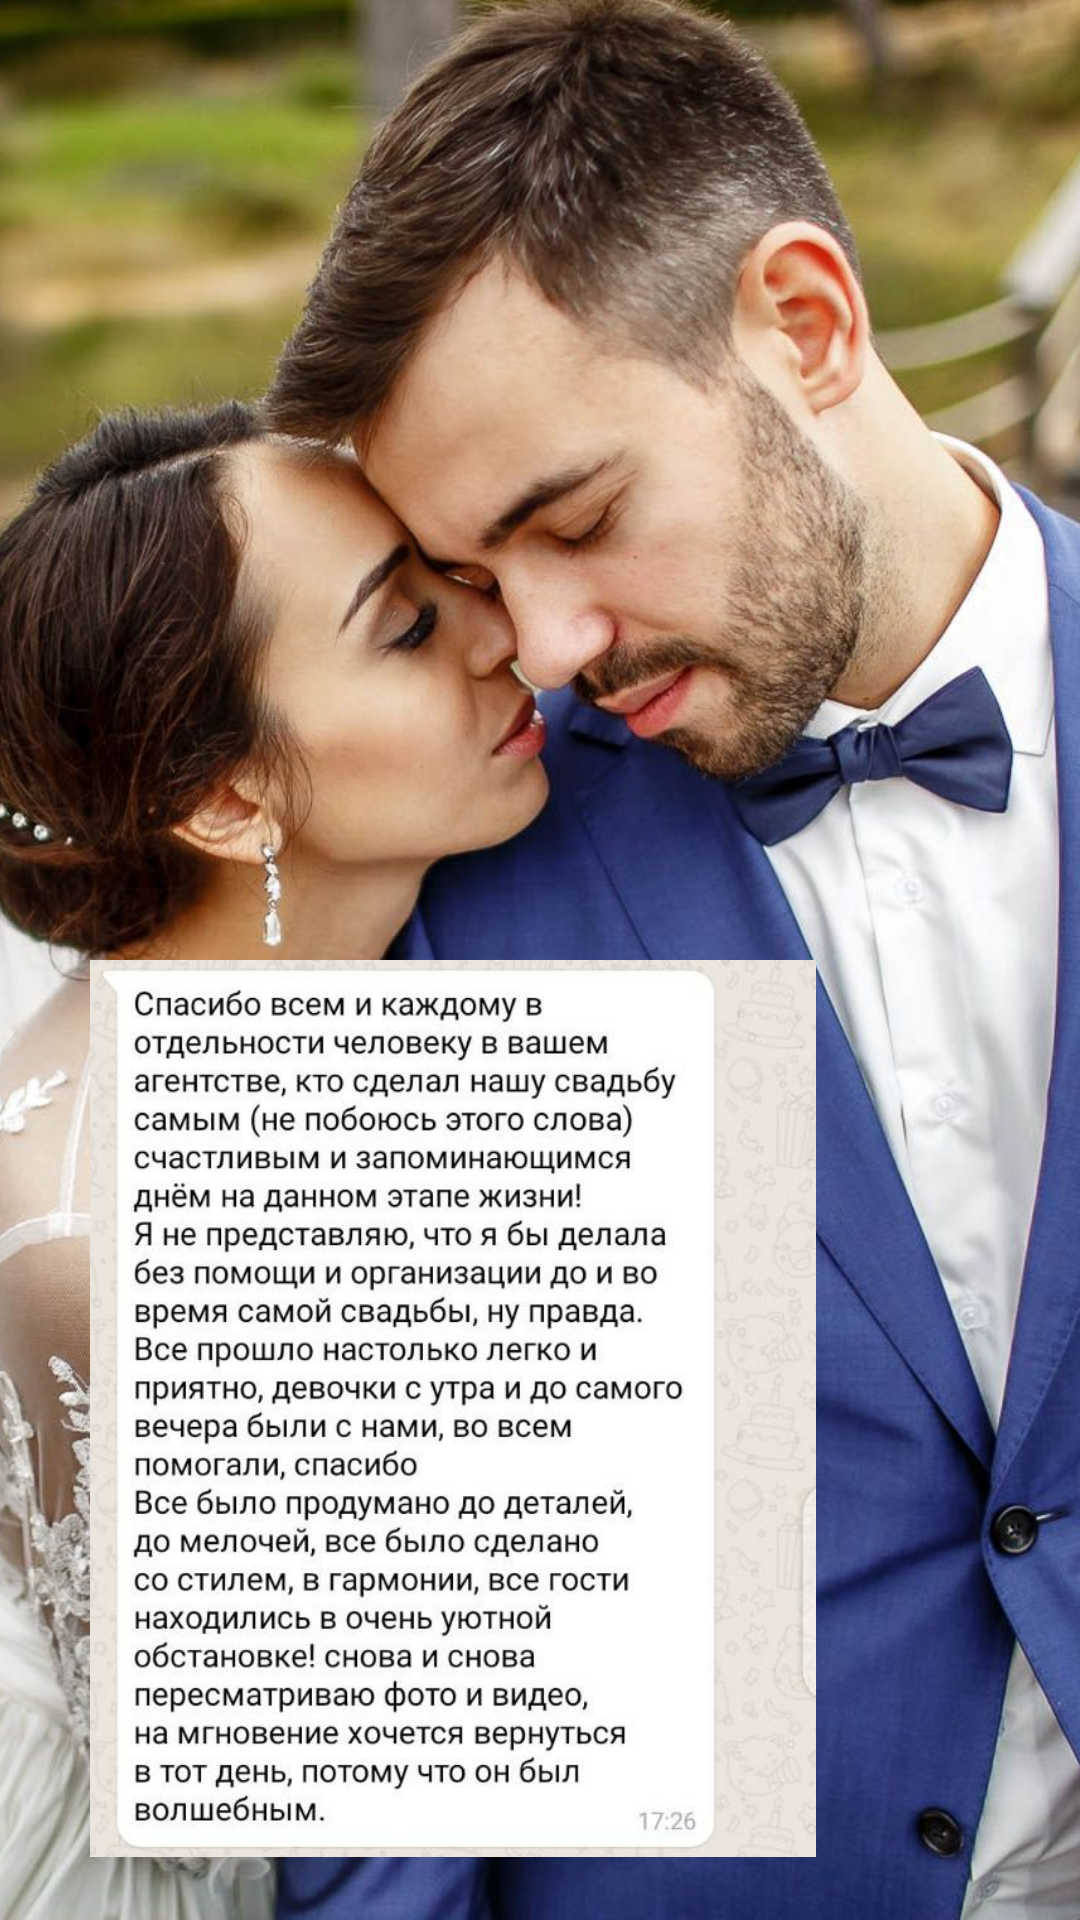 Организация свадьбы в Нижневартовске
от компании Pandaevent